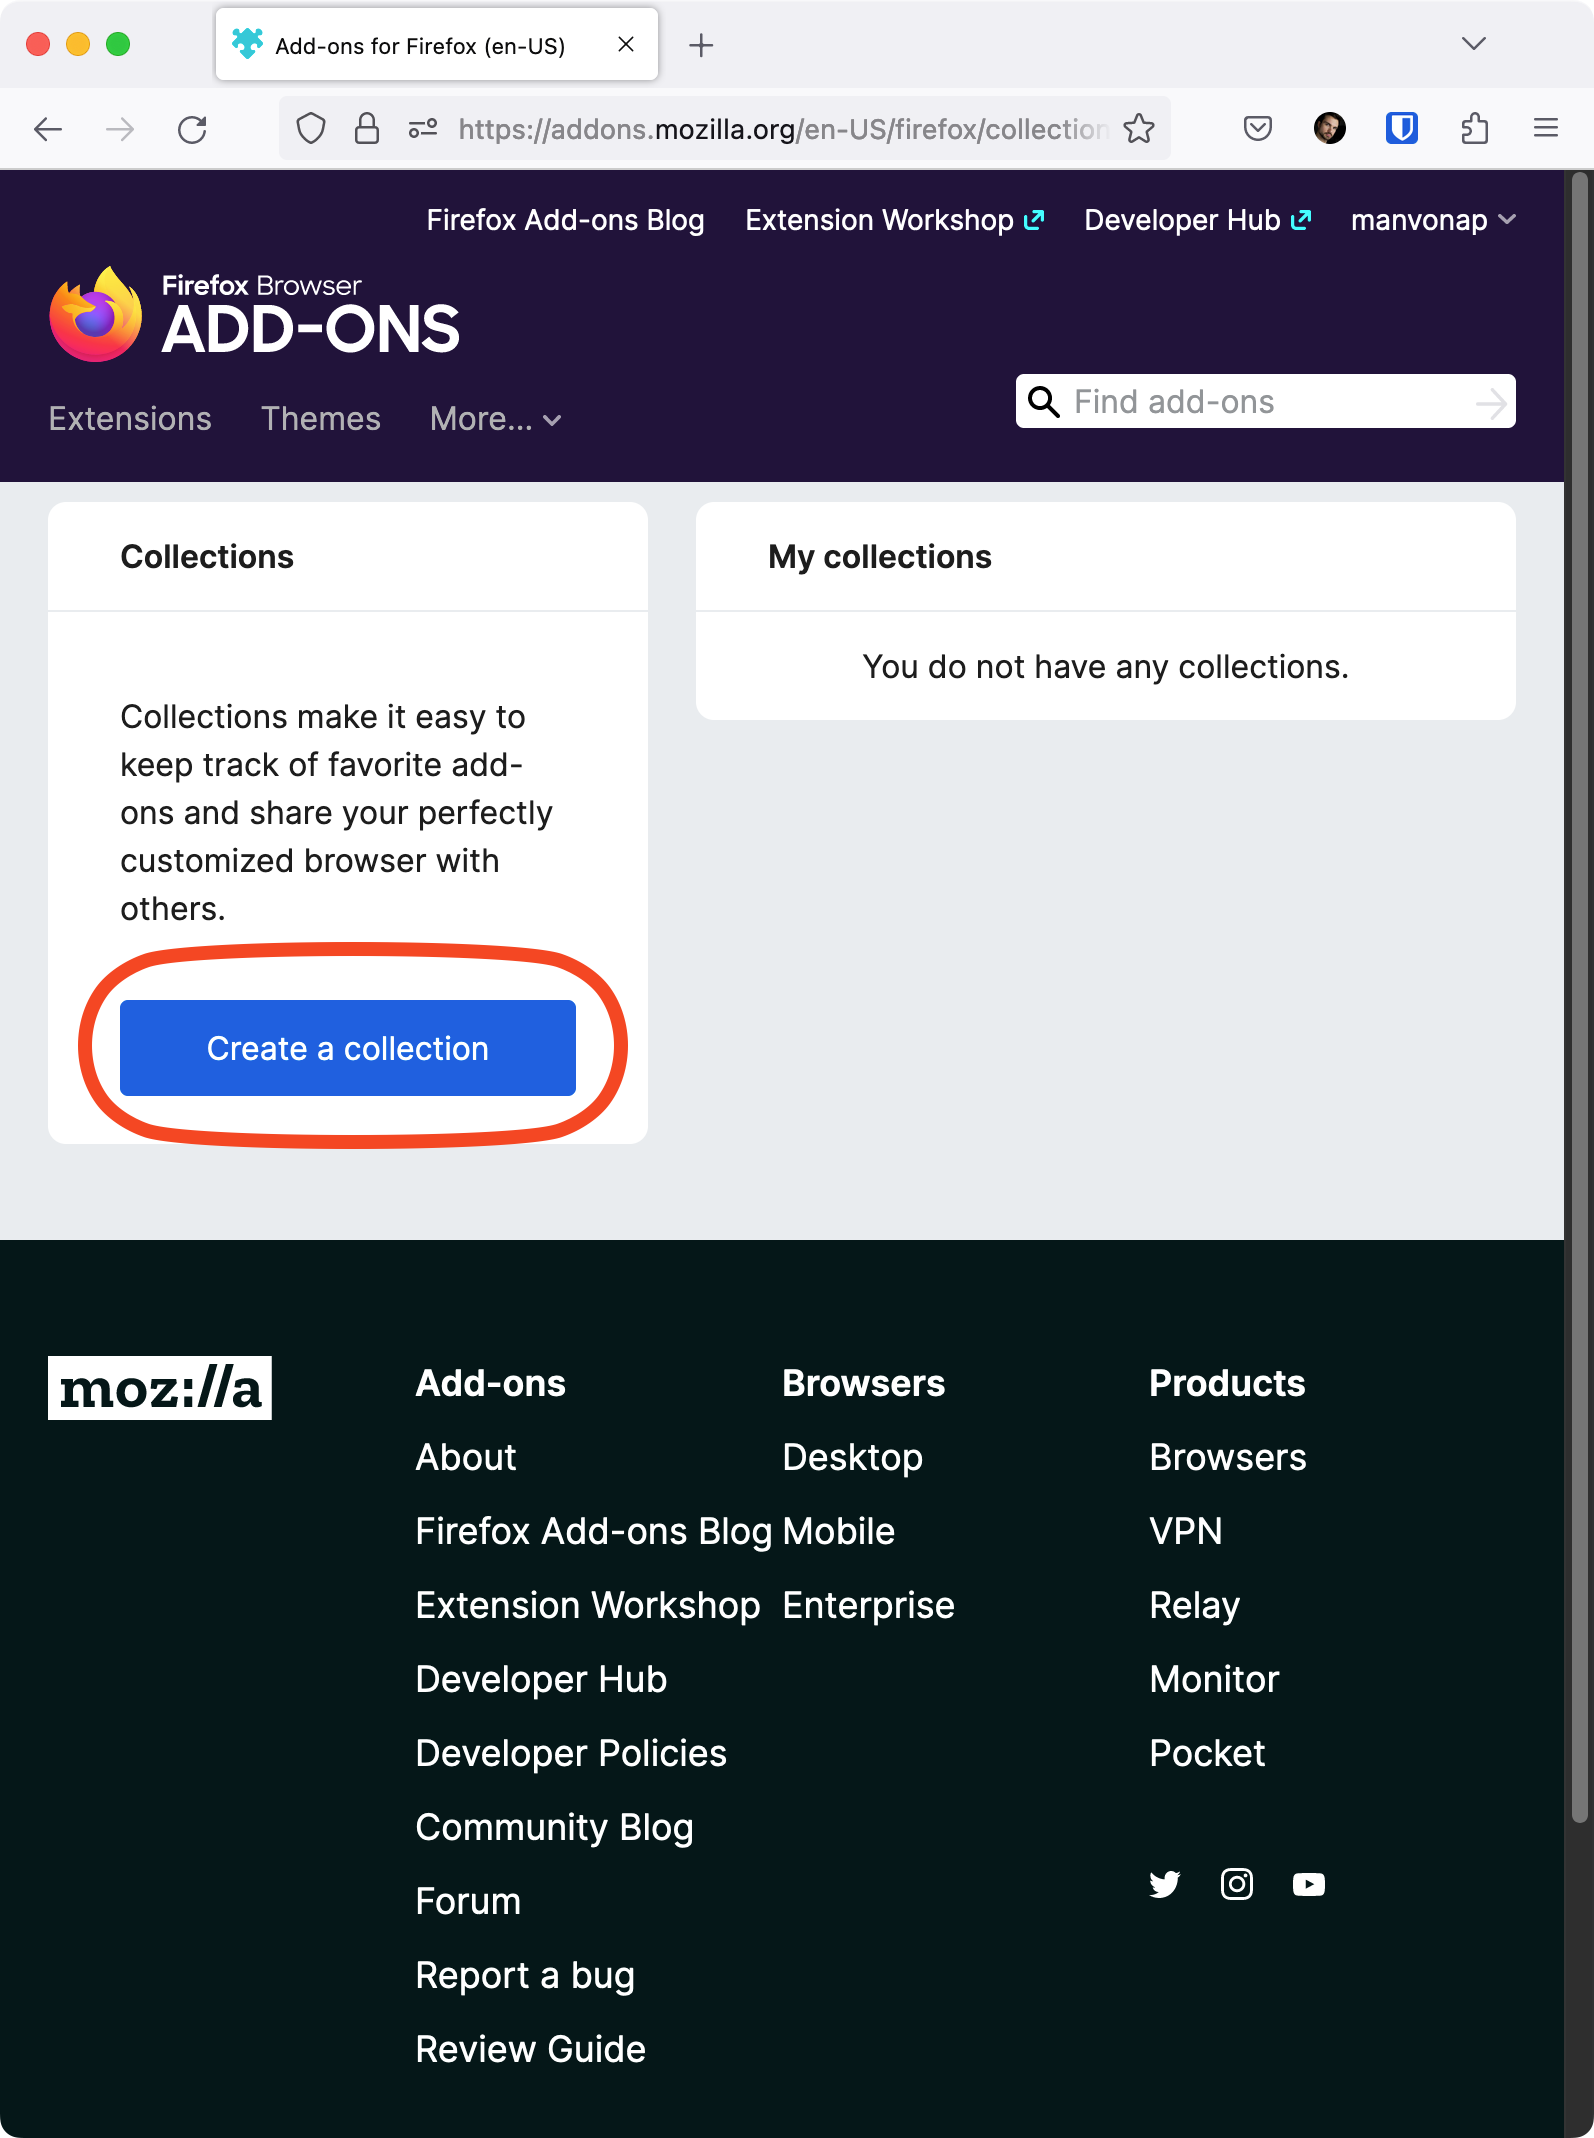 Captura de tela do site de coleções de complementos do Firefox com o botão Criar uma coleção destacado